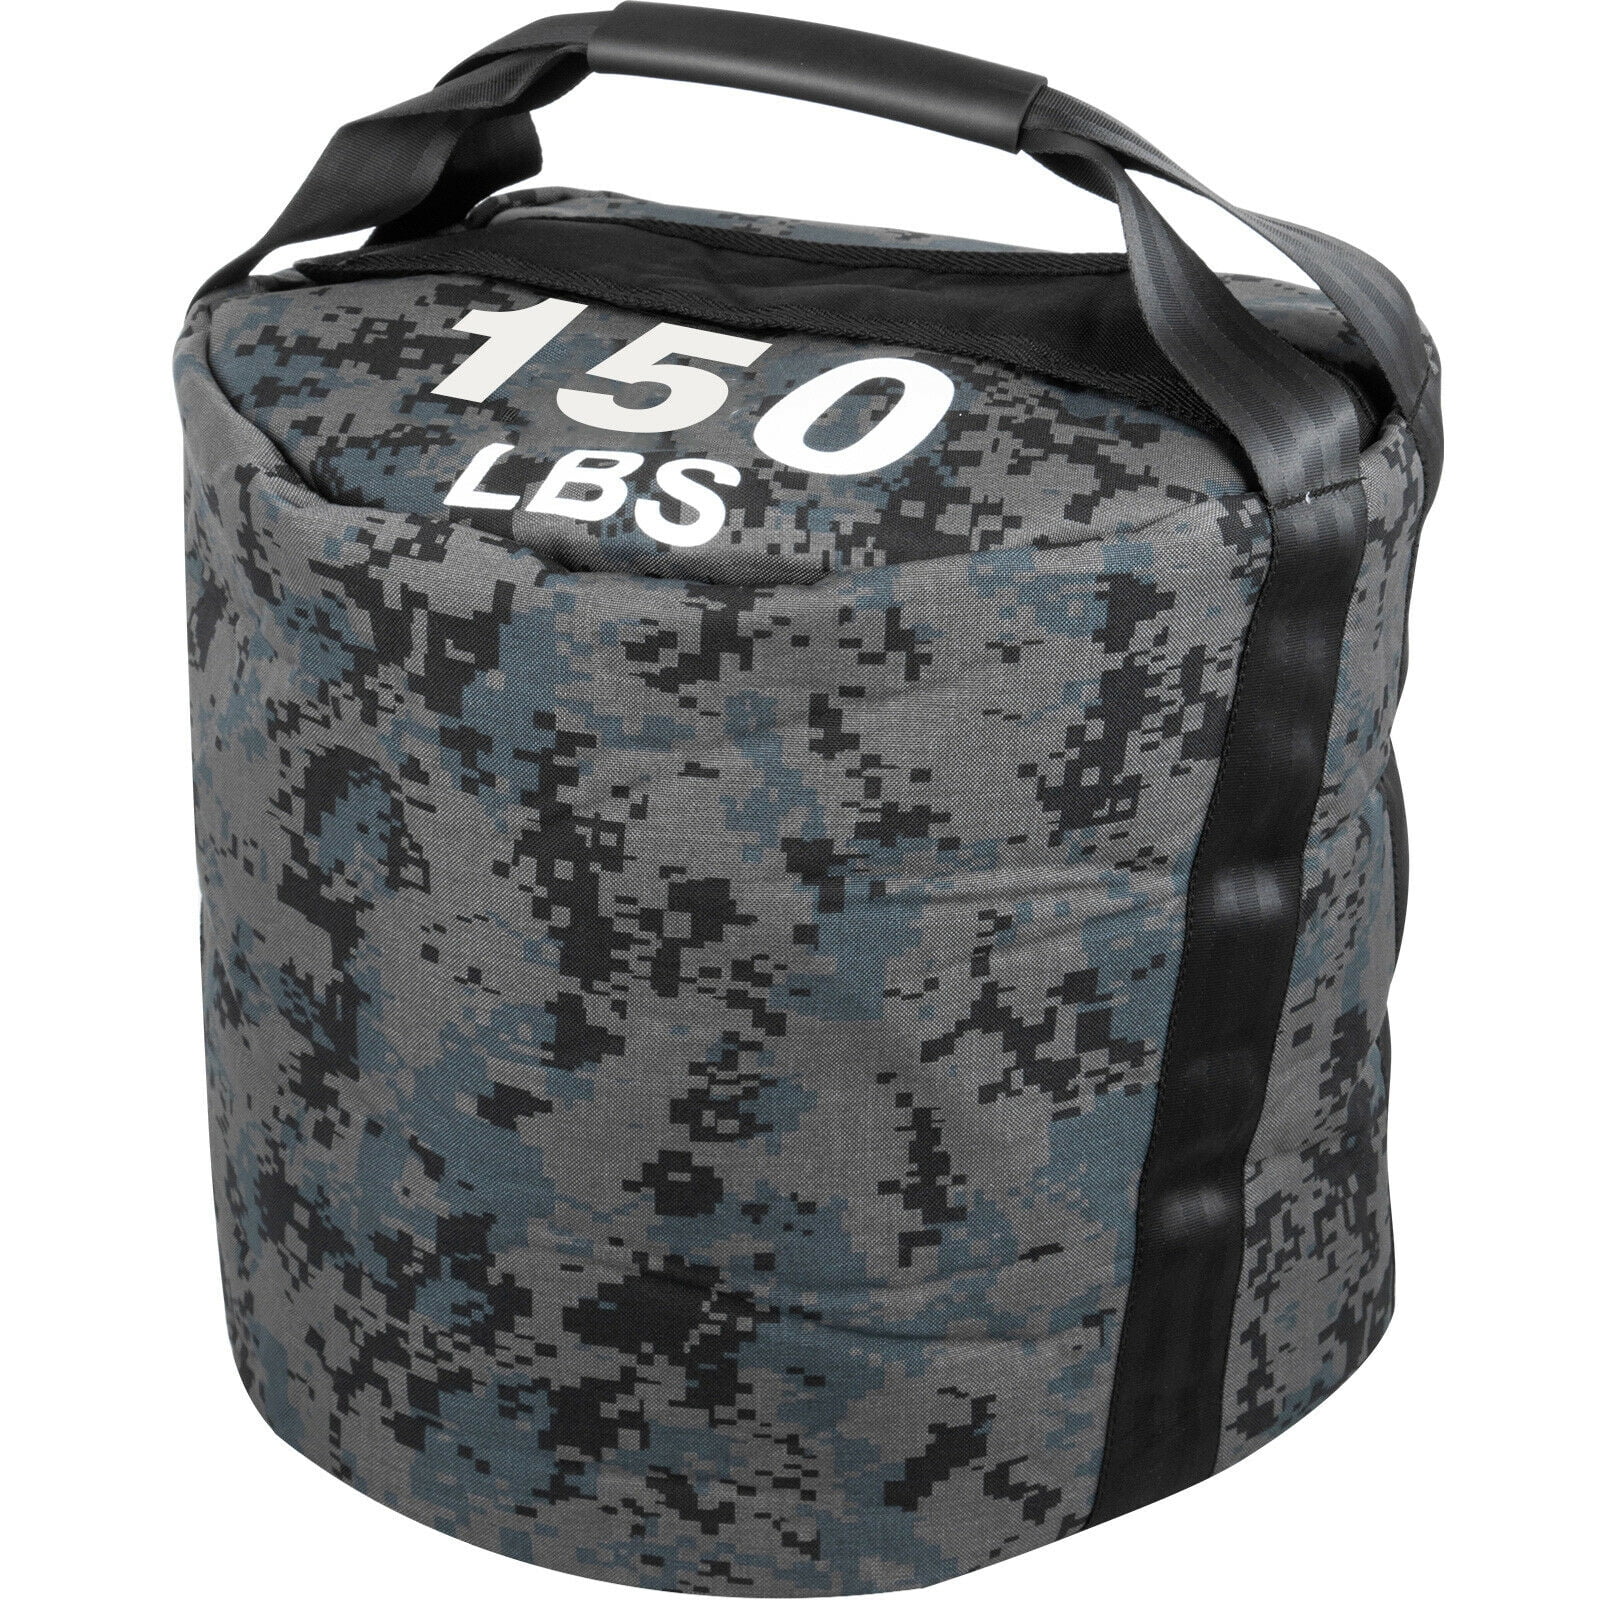 Workout Sandbag Strongman Sandbags 150lbs/68Kg Fitness Sand Bag Workout Strength 